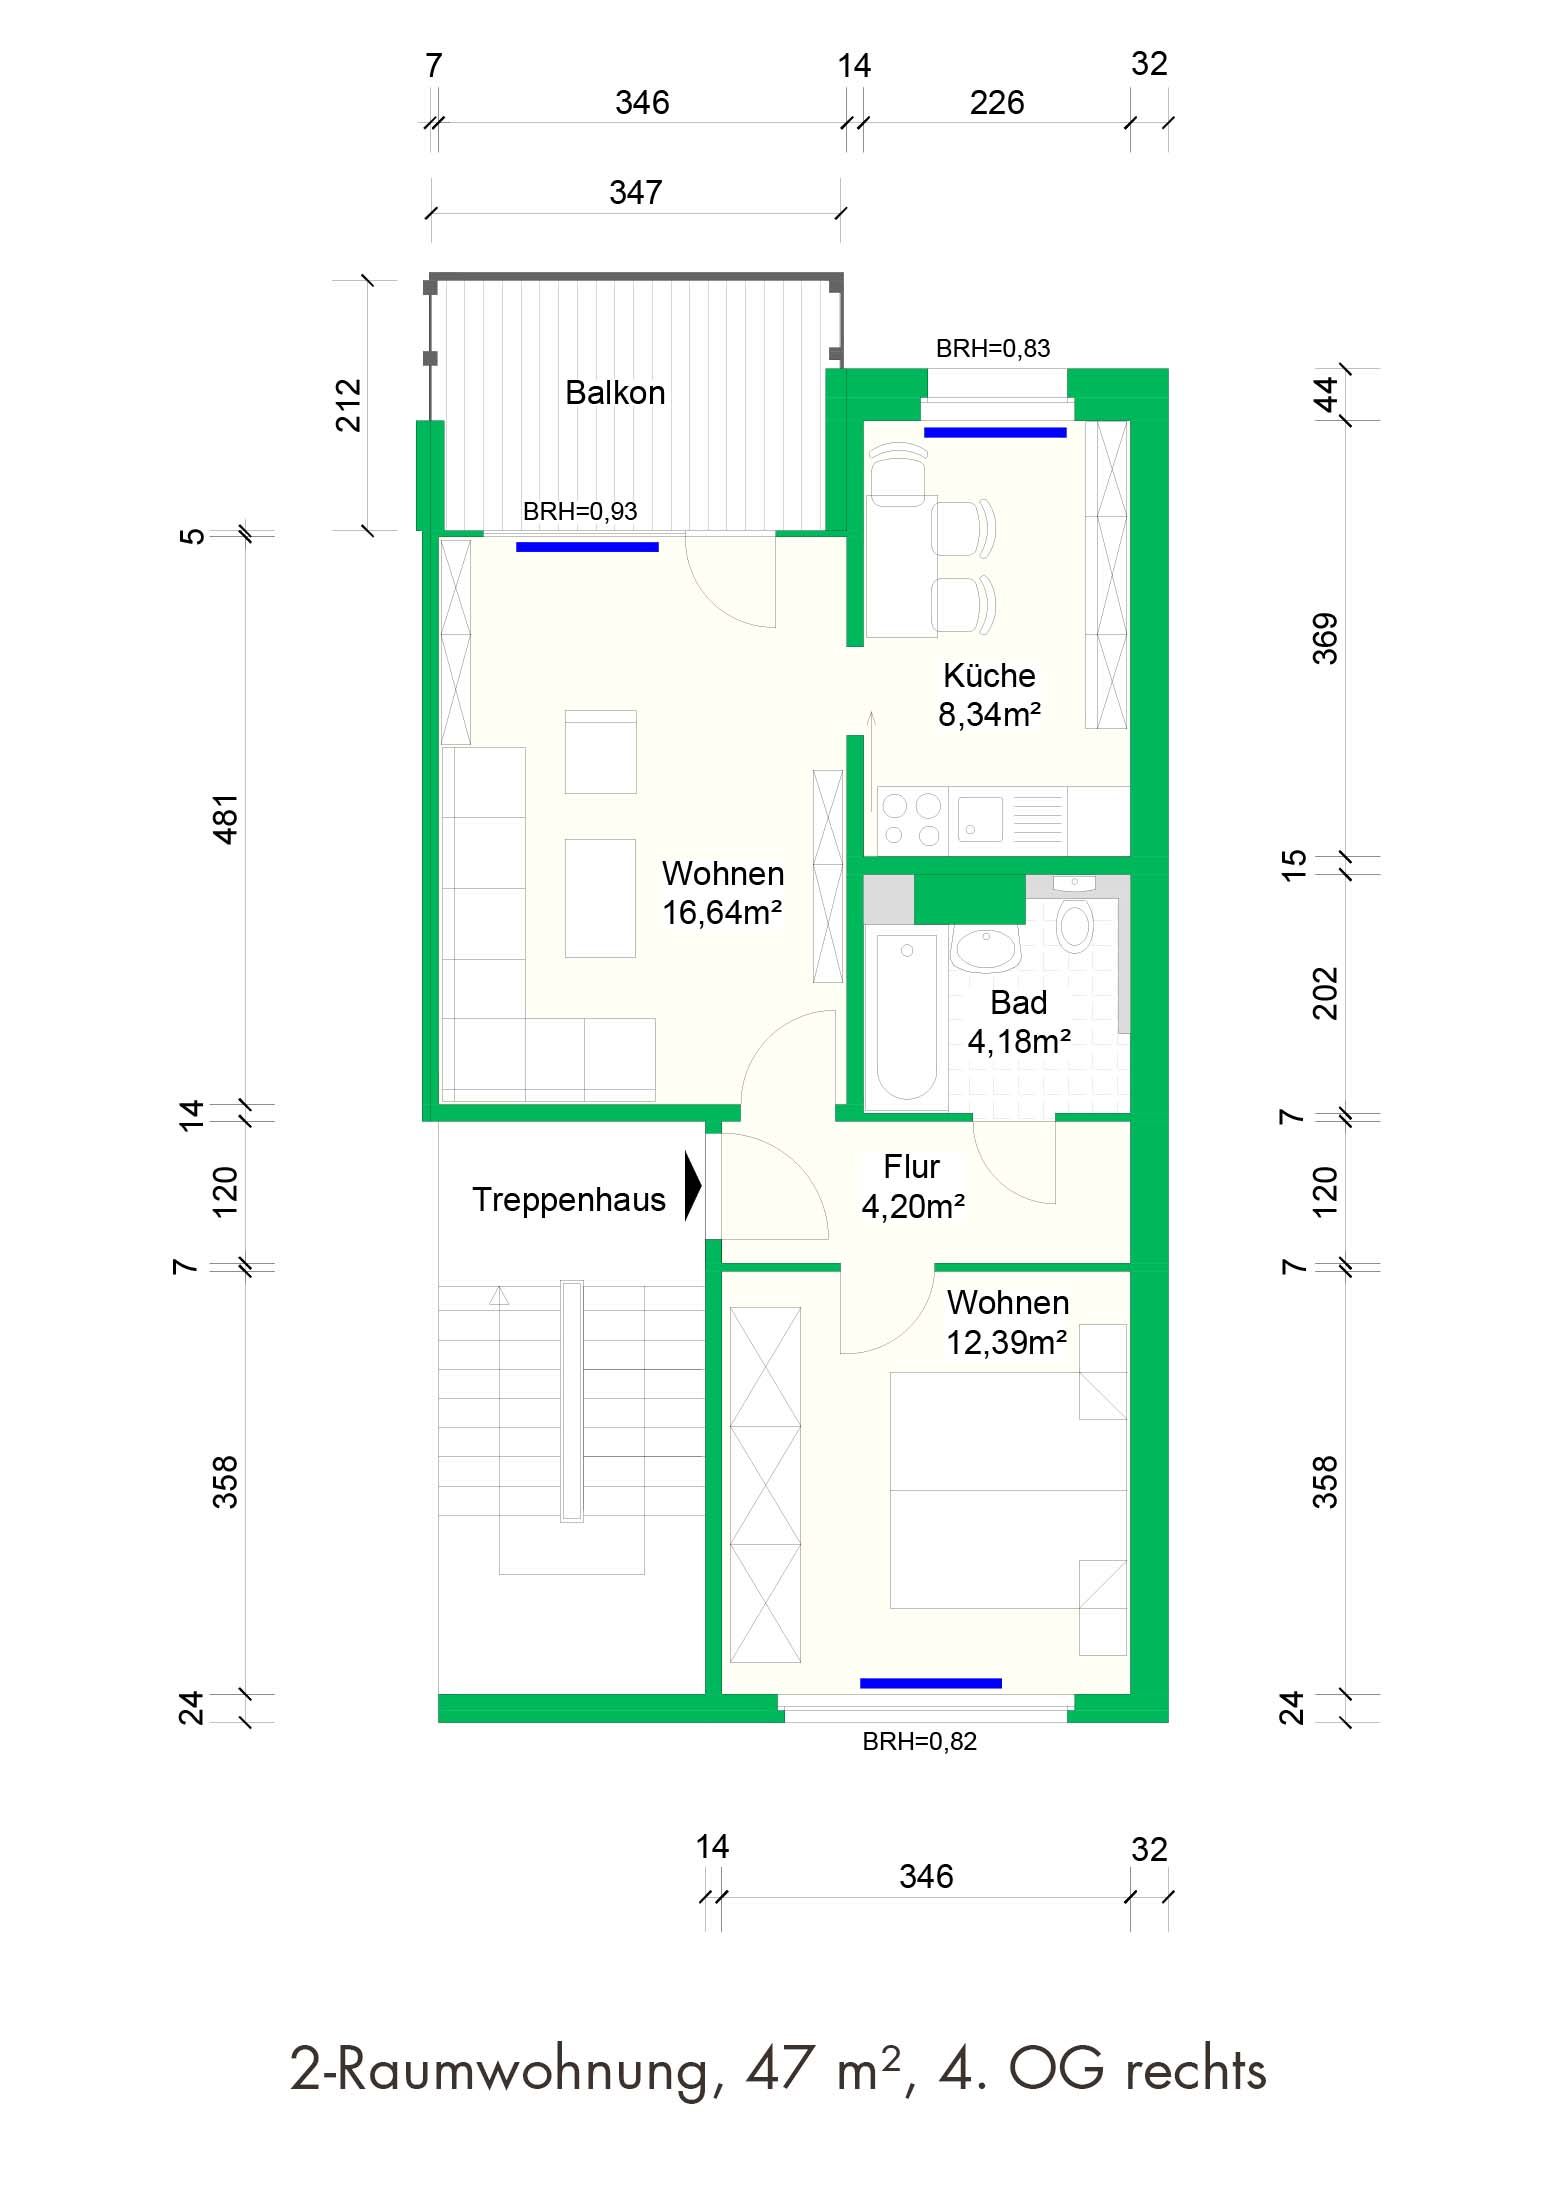 2-Raumwohnung, 47 m², 4. OG rechts